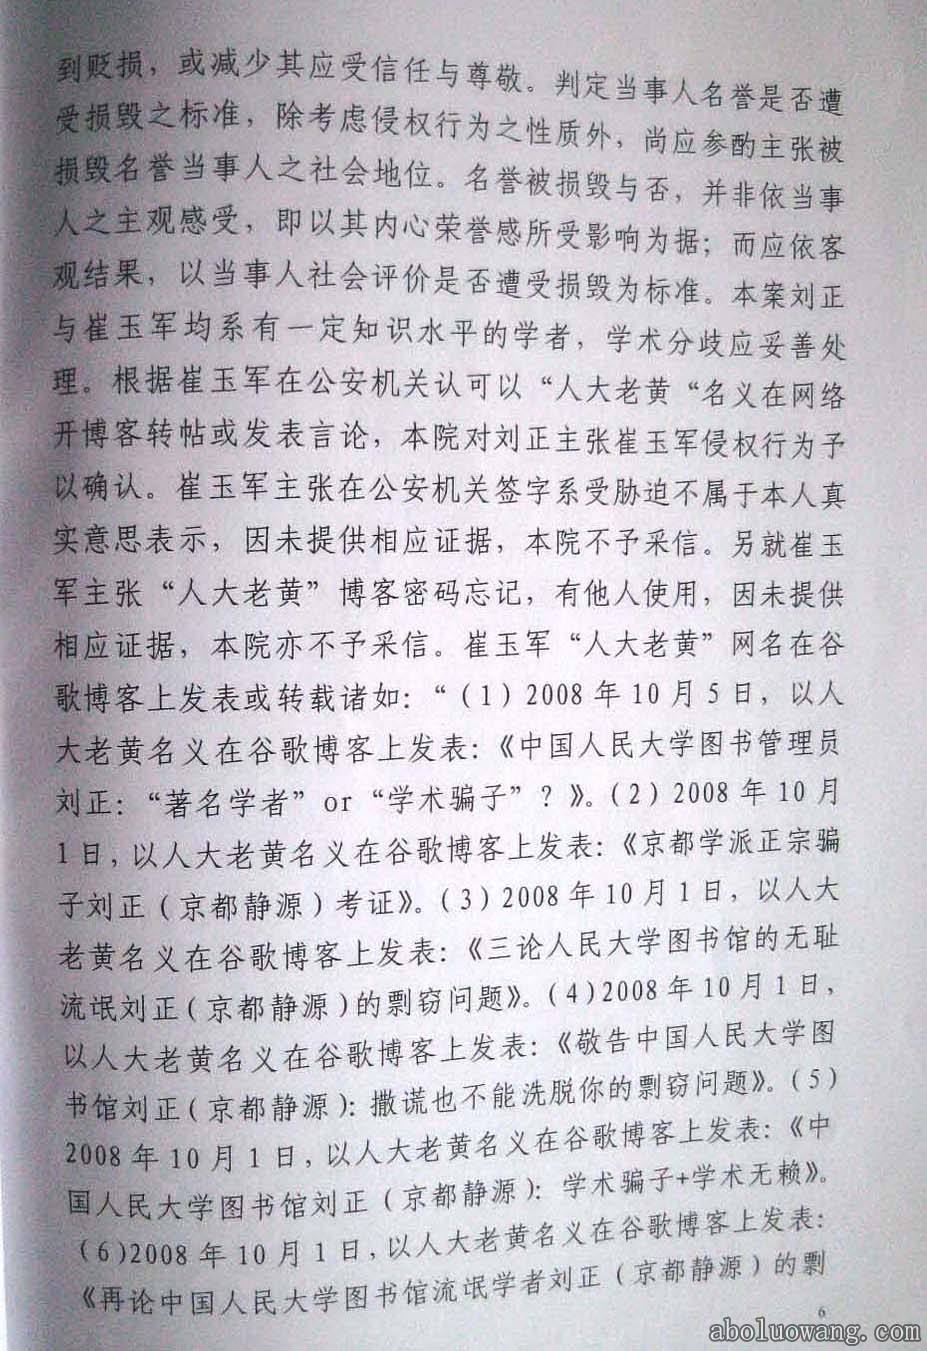 方克立弟子崔玉军诽谤刘正教授终审法律判决书6